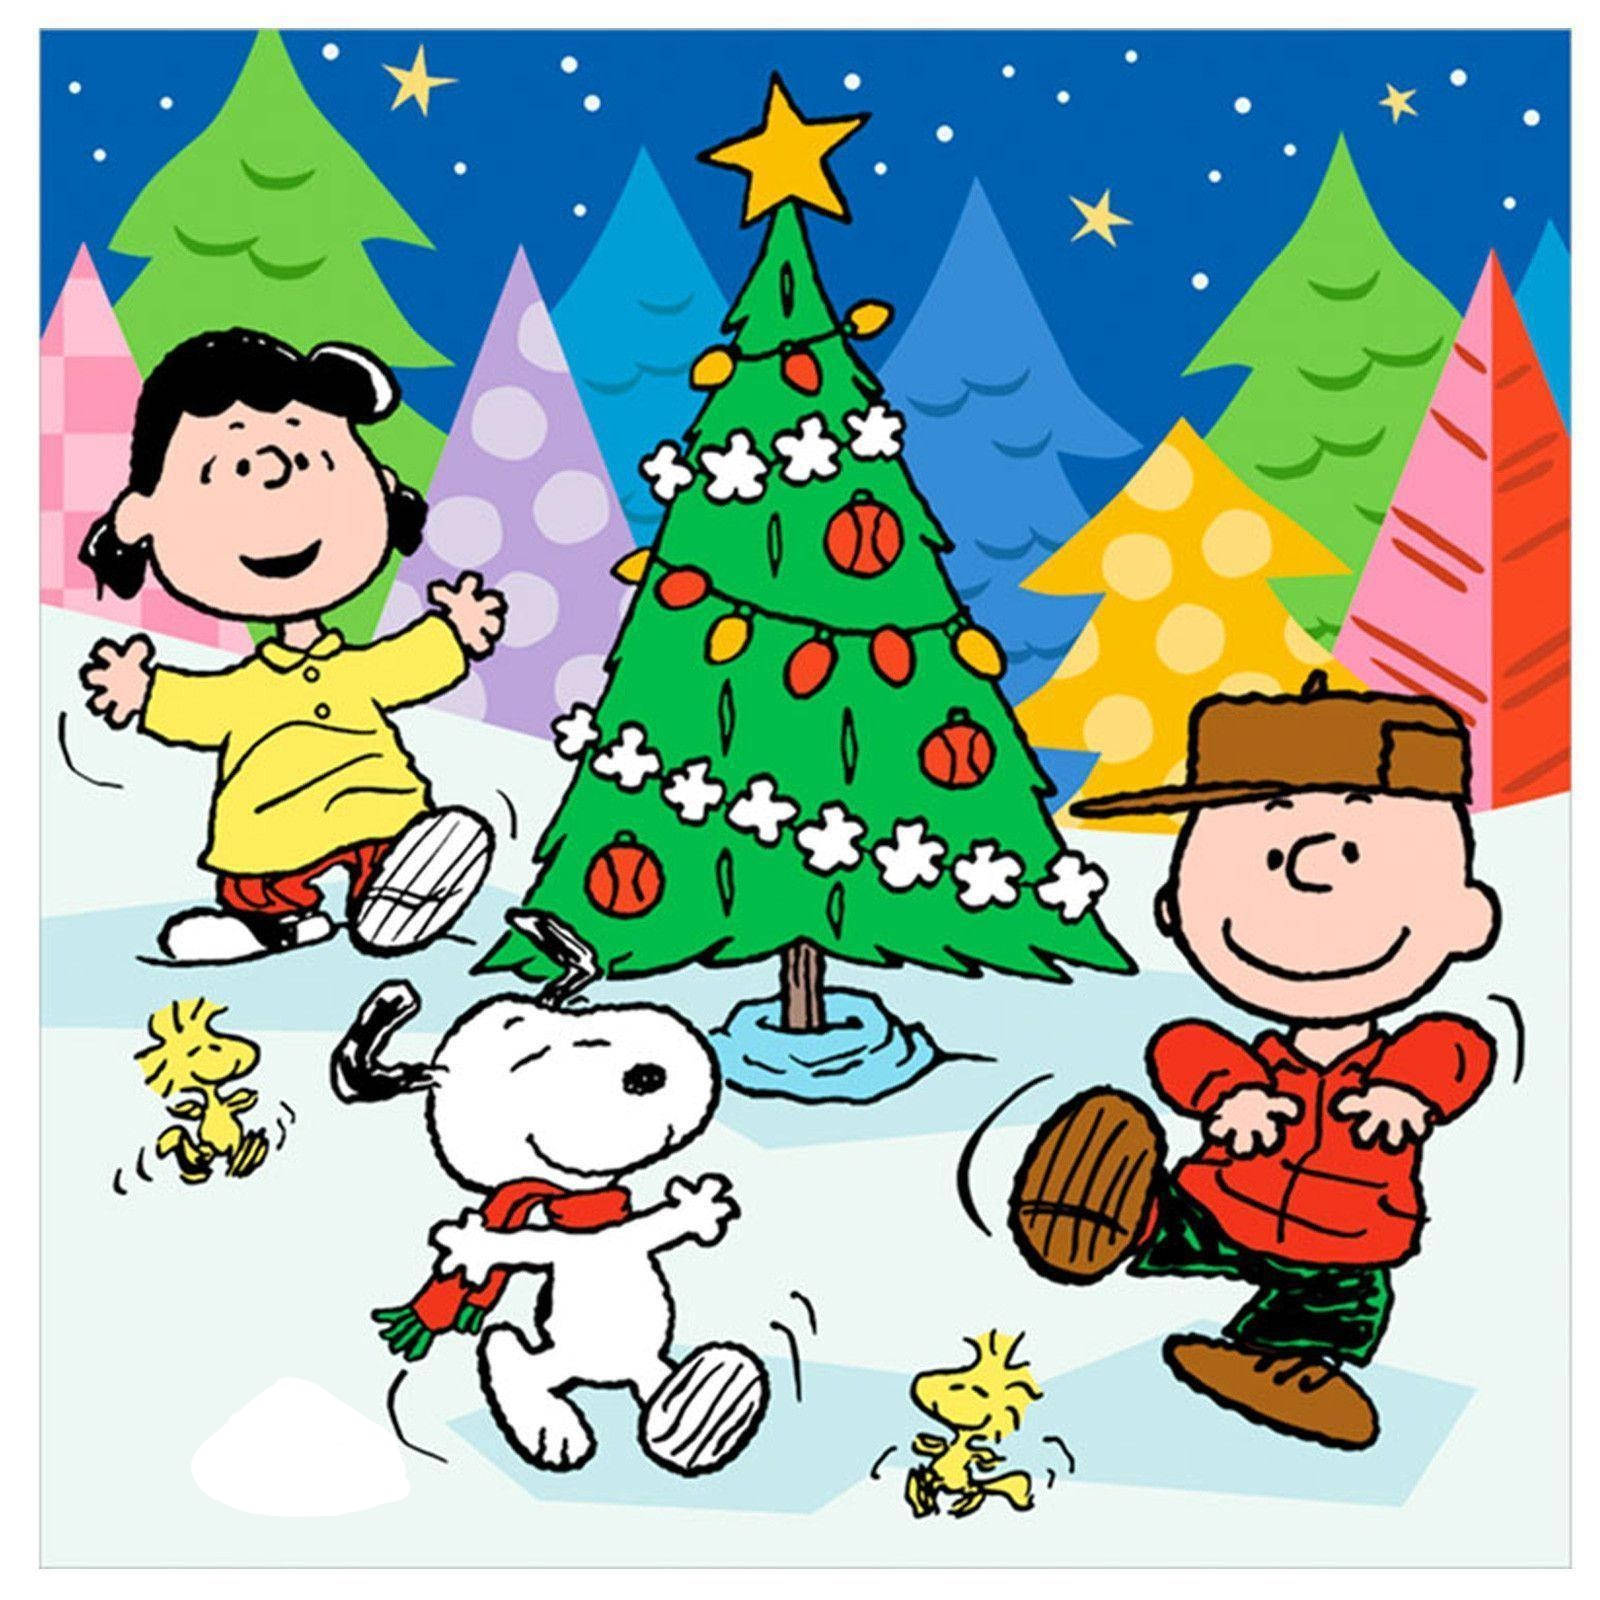 Fåjulstämning Med Denna Festliga Snoopy Iphone-bakgrund Till Julen. Wallpaper